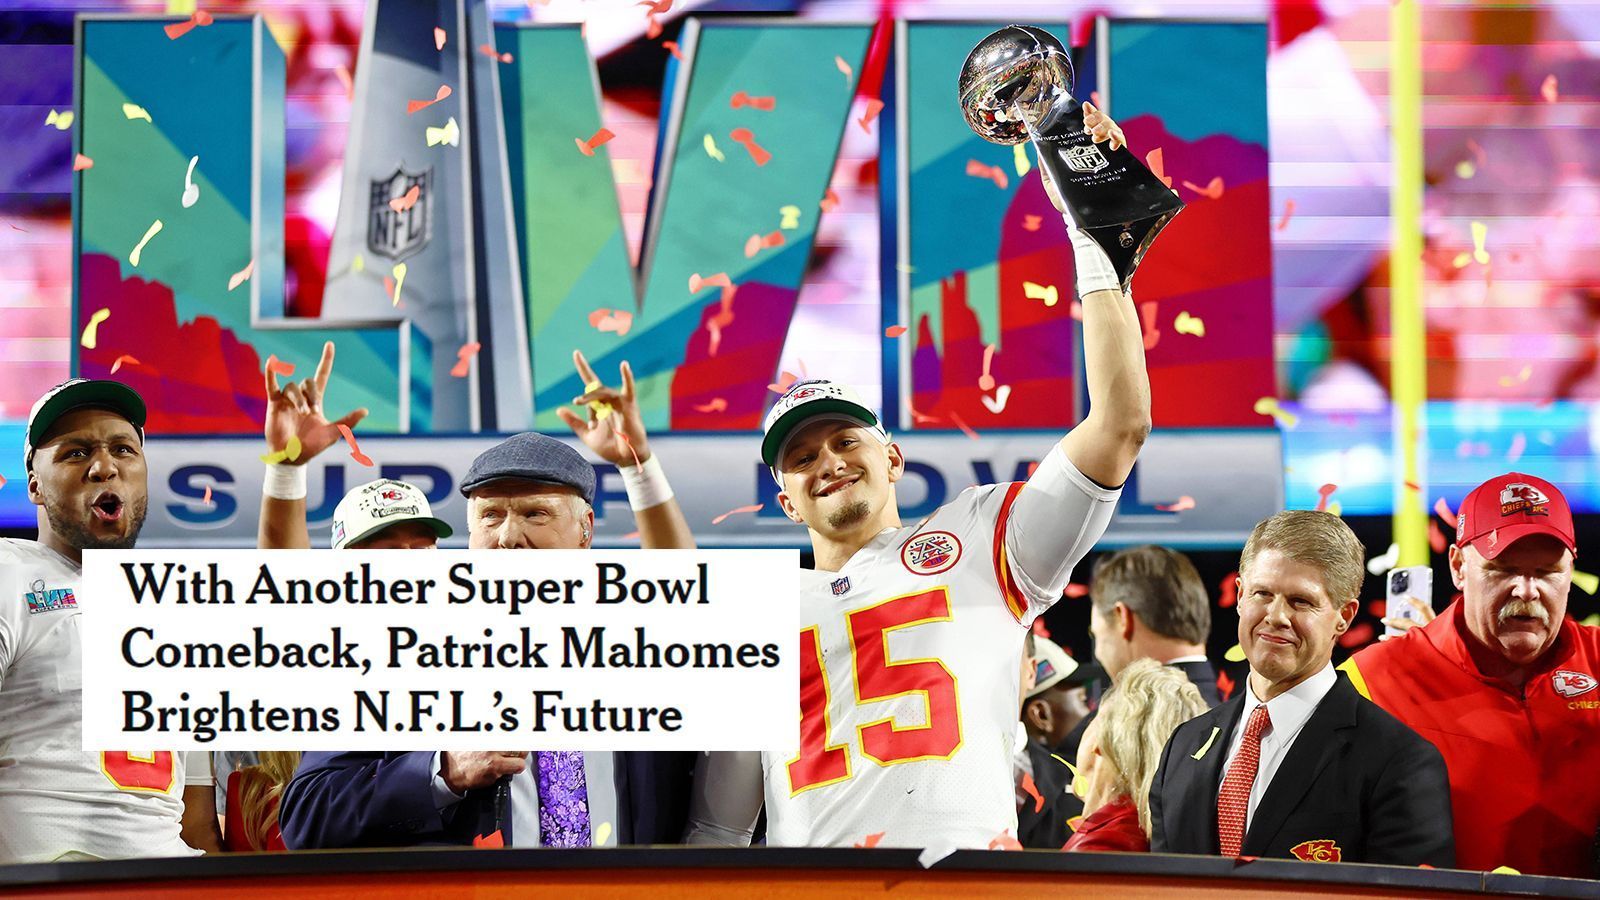 
                <strong>New York Times (USA)</strong><br>
                "Mit einem weiterem Super Bowl-Comeback lässt Patrick Mahomes die Zukunft der NFL rosig aussehen."
              